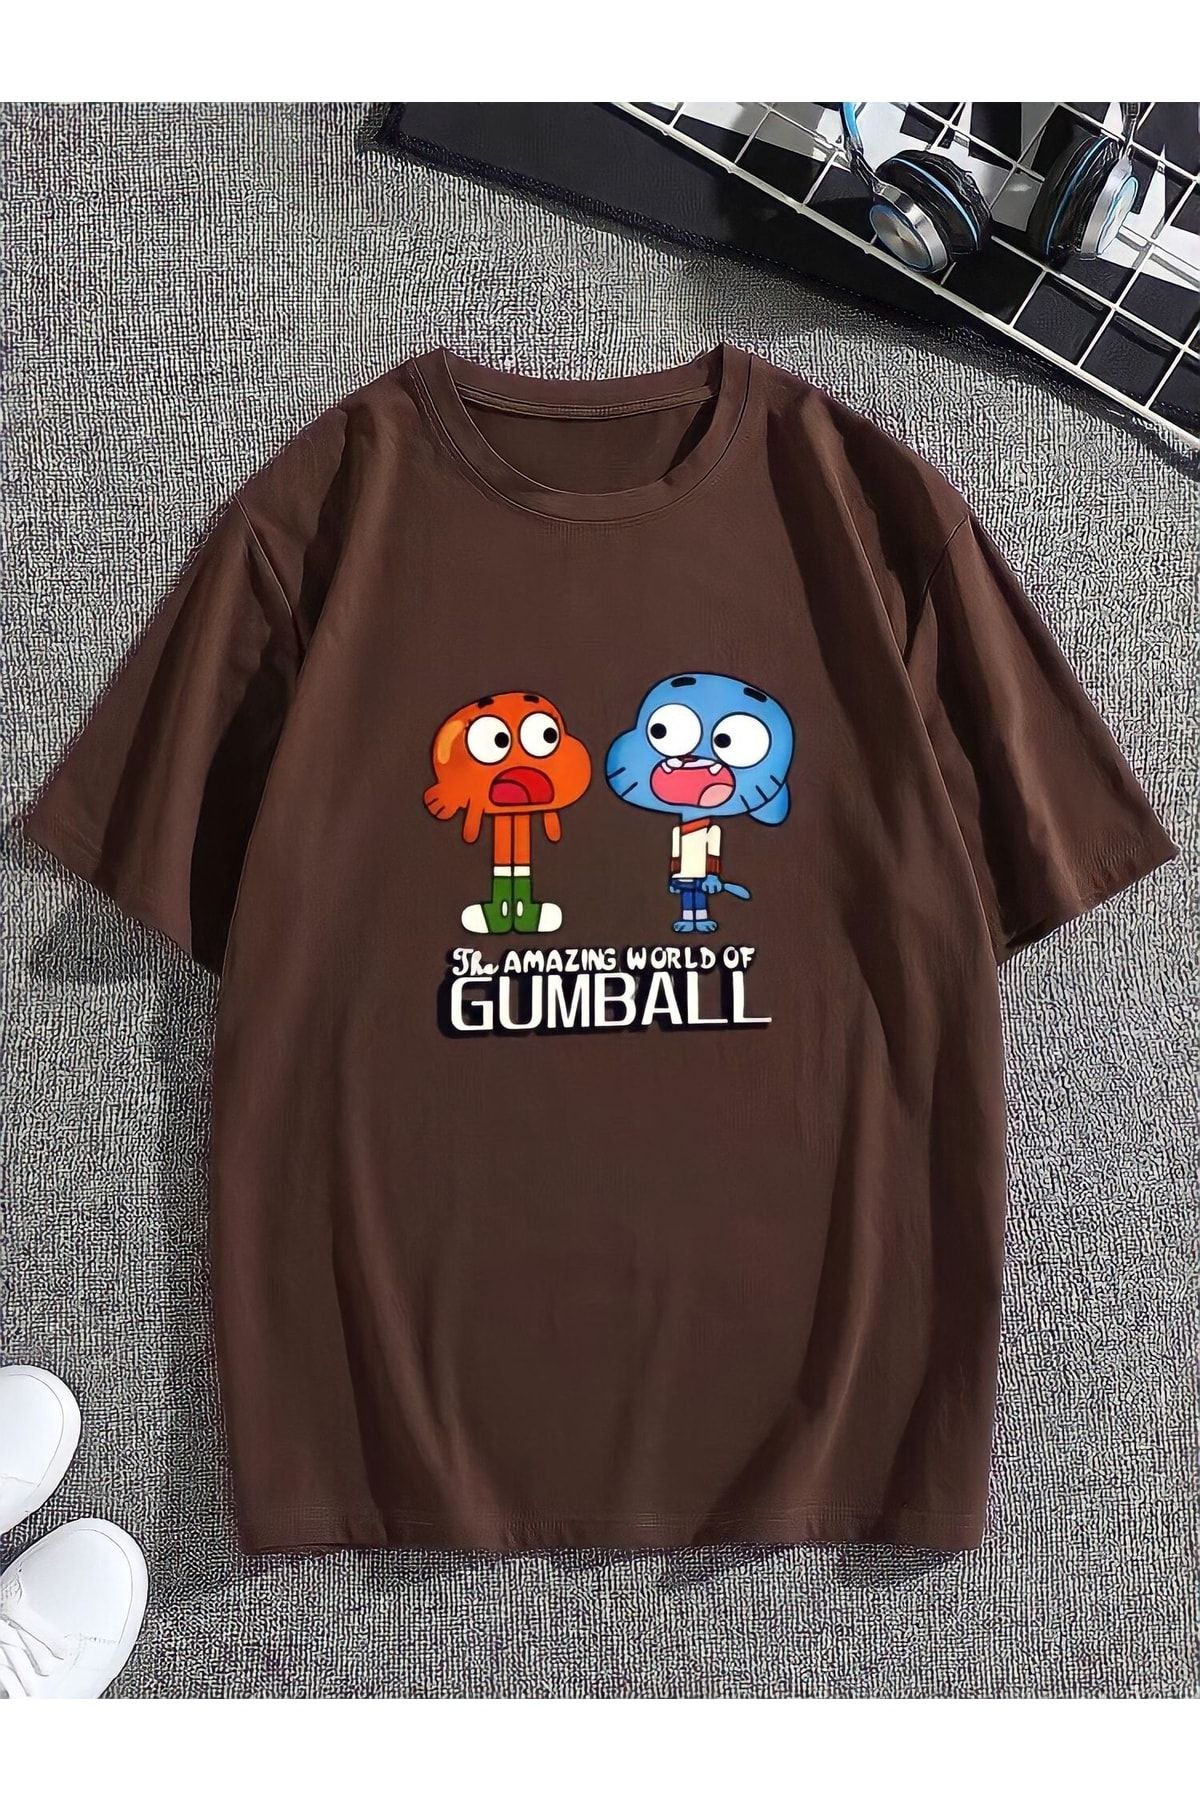 Serays moda Gumball Baskılı Kız/erkek Çocuk Tişört